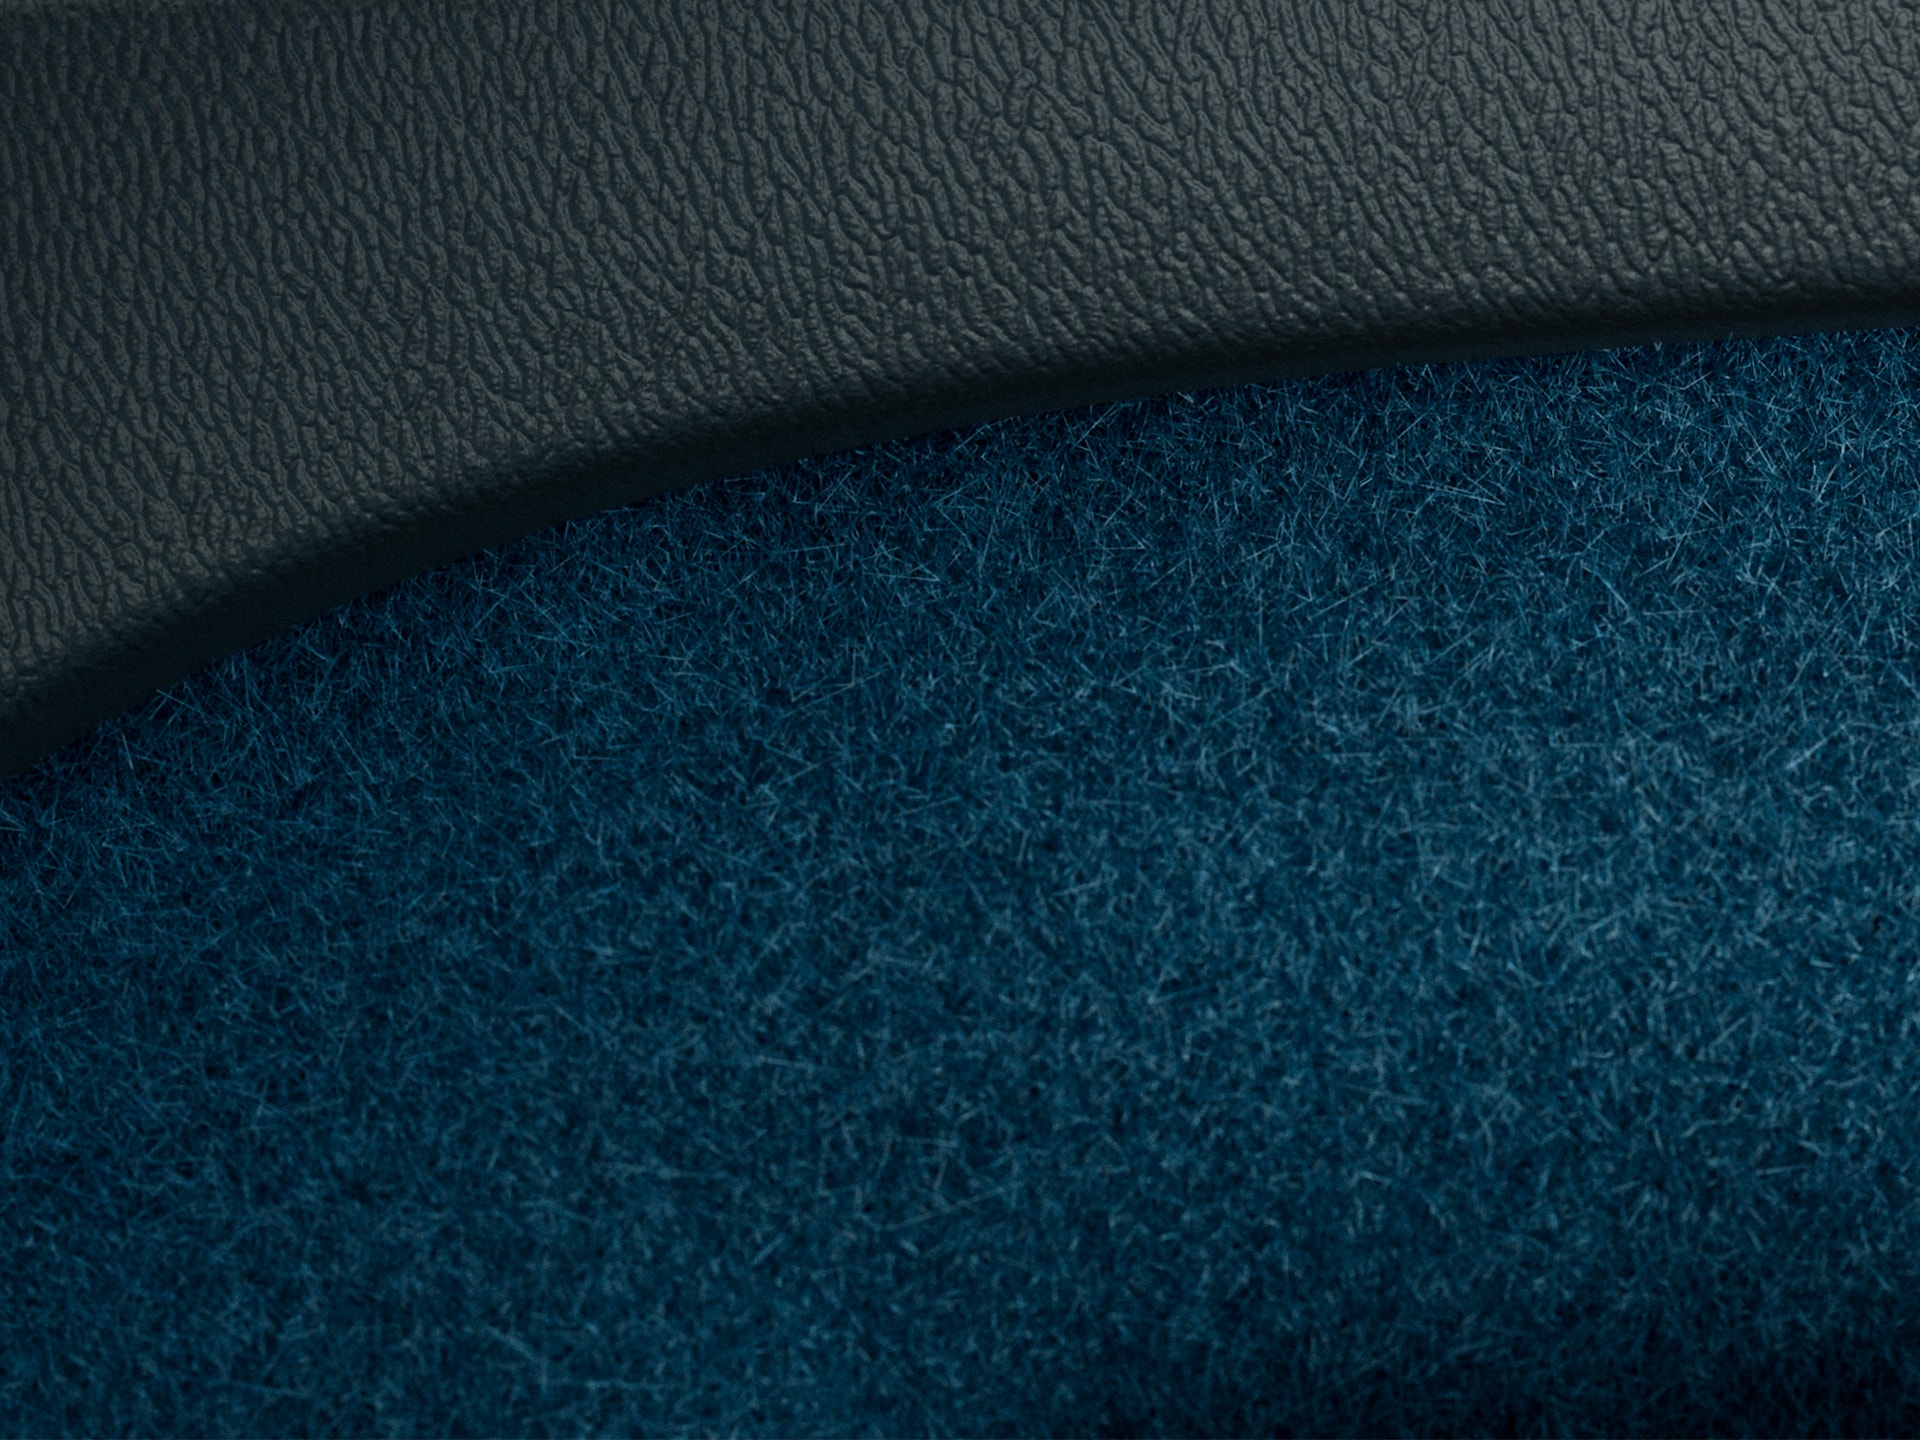 Fjordblå, delvis återvunna mattor i en Volvo XC40 Recharge laddhybrid.